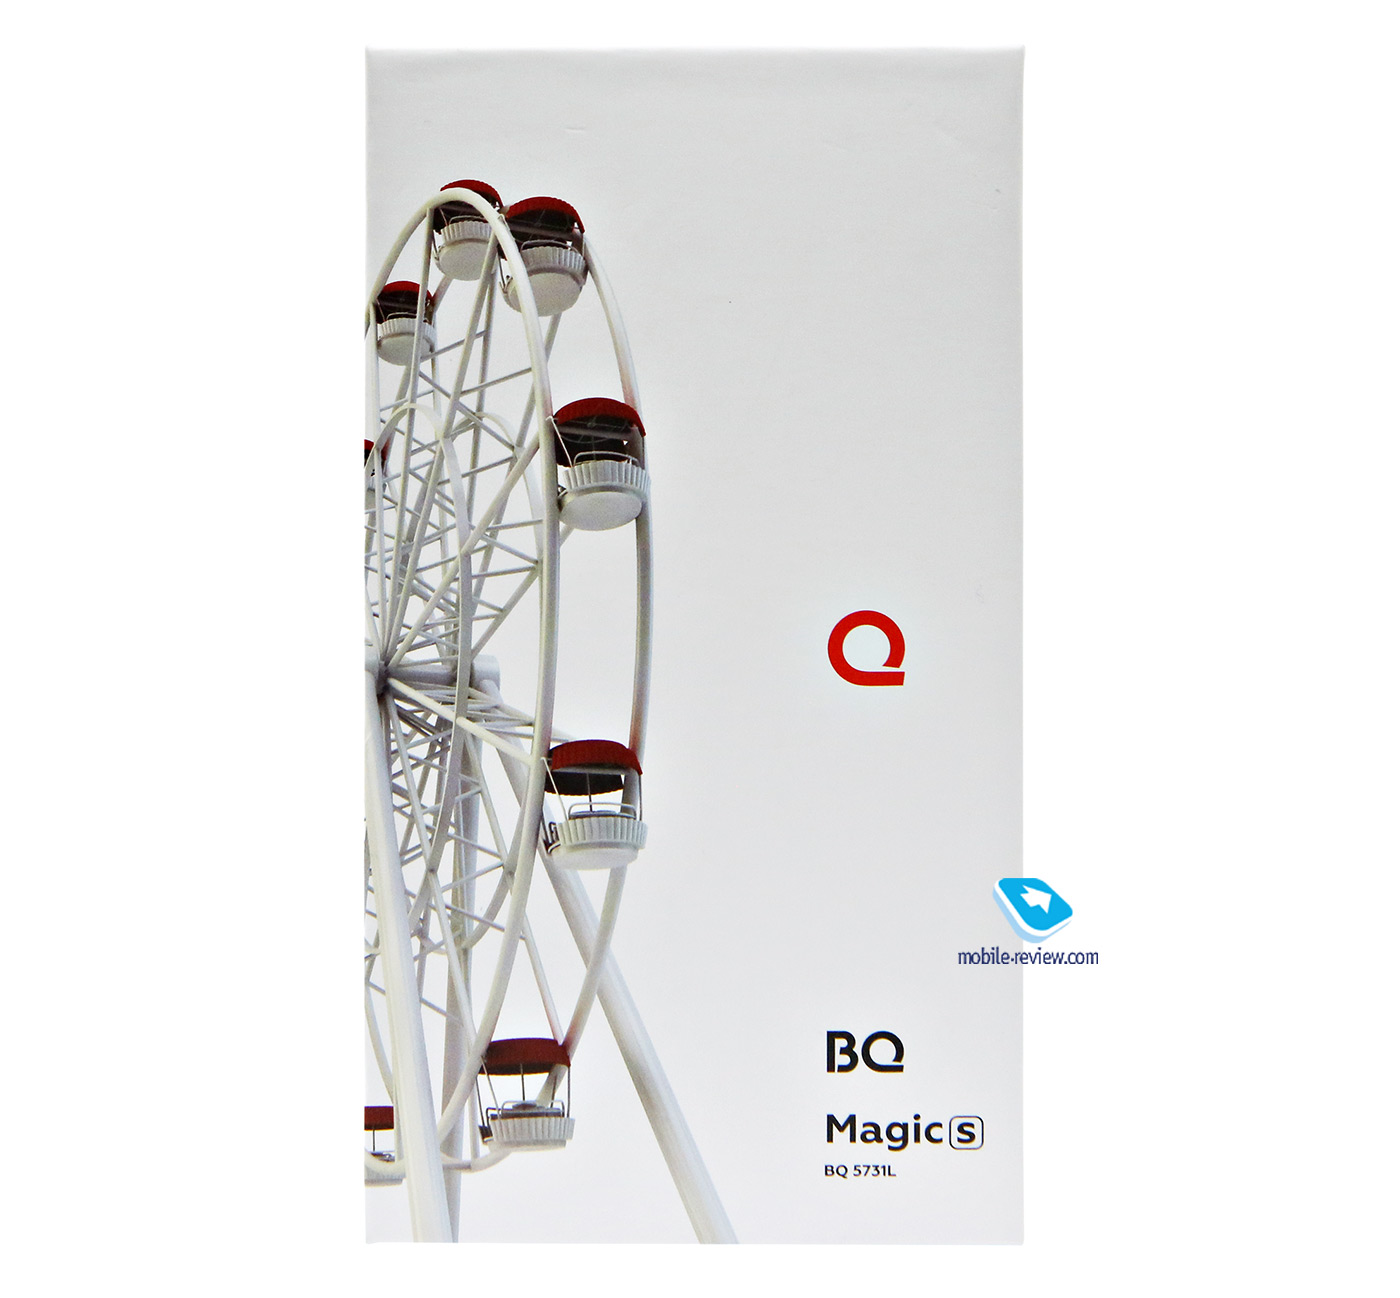    BQ Magic S (5731L)